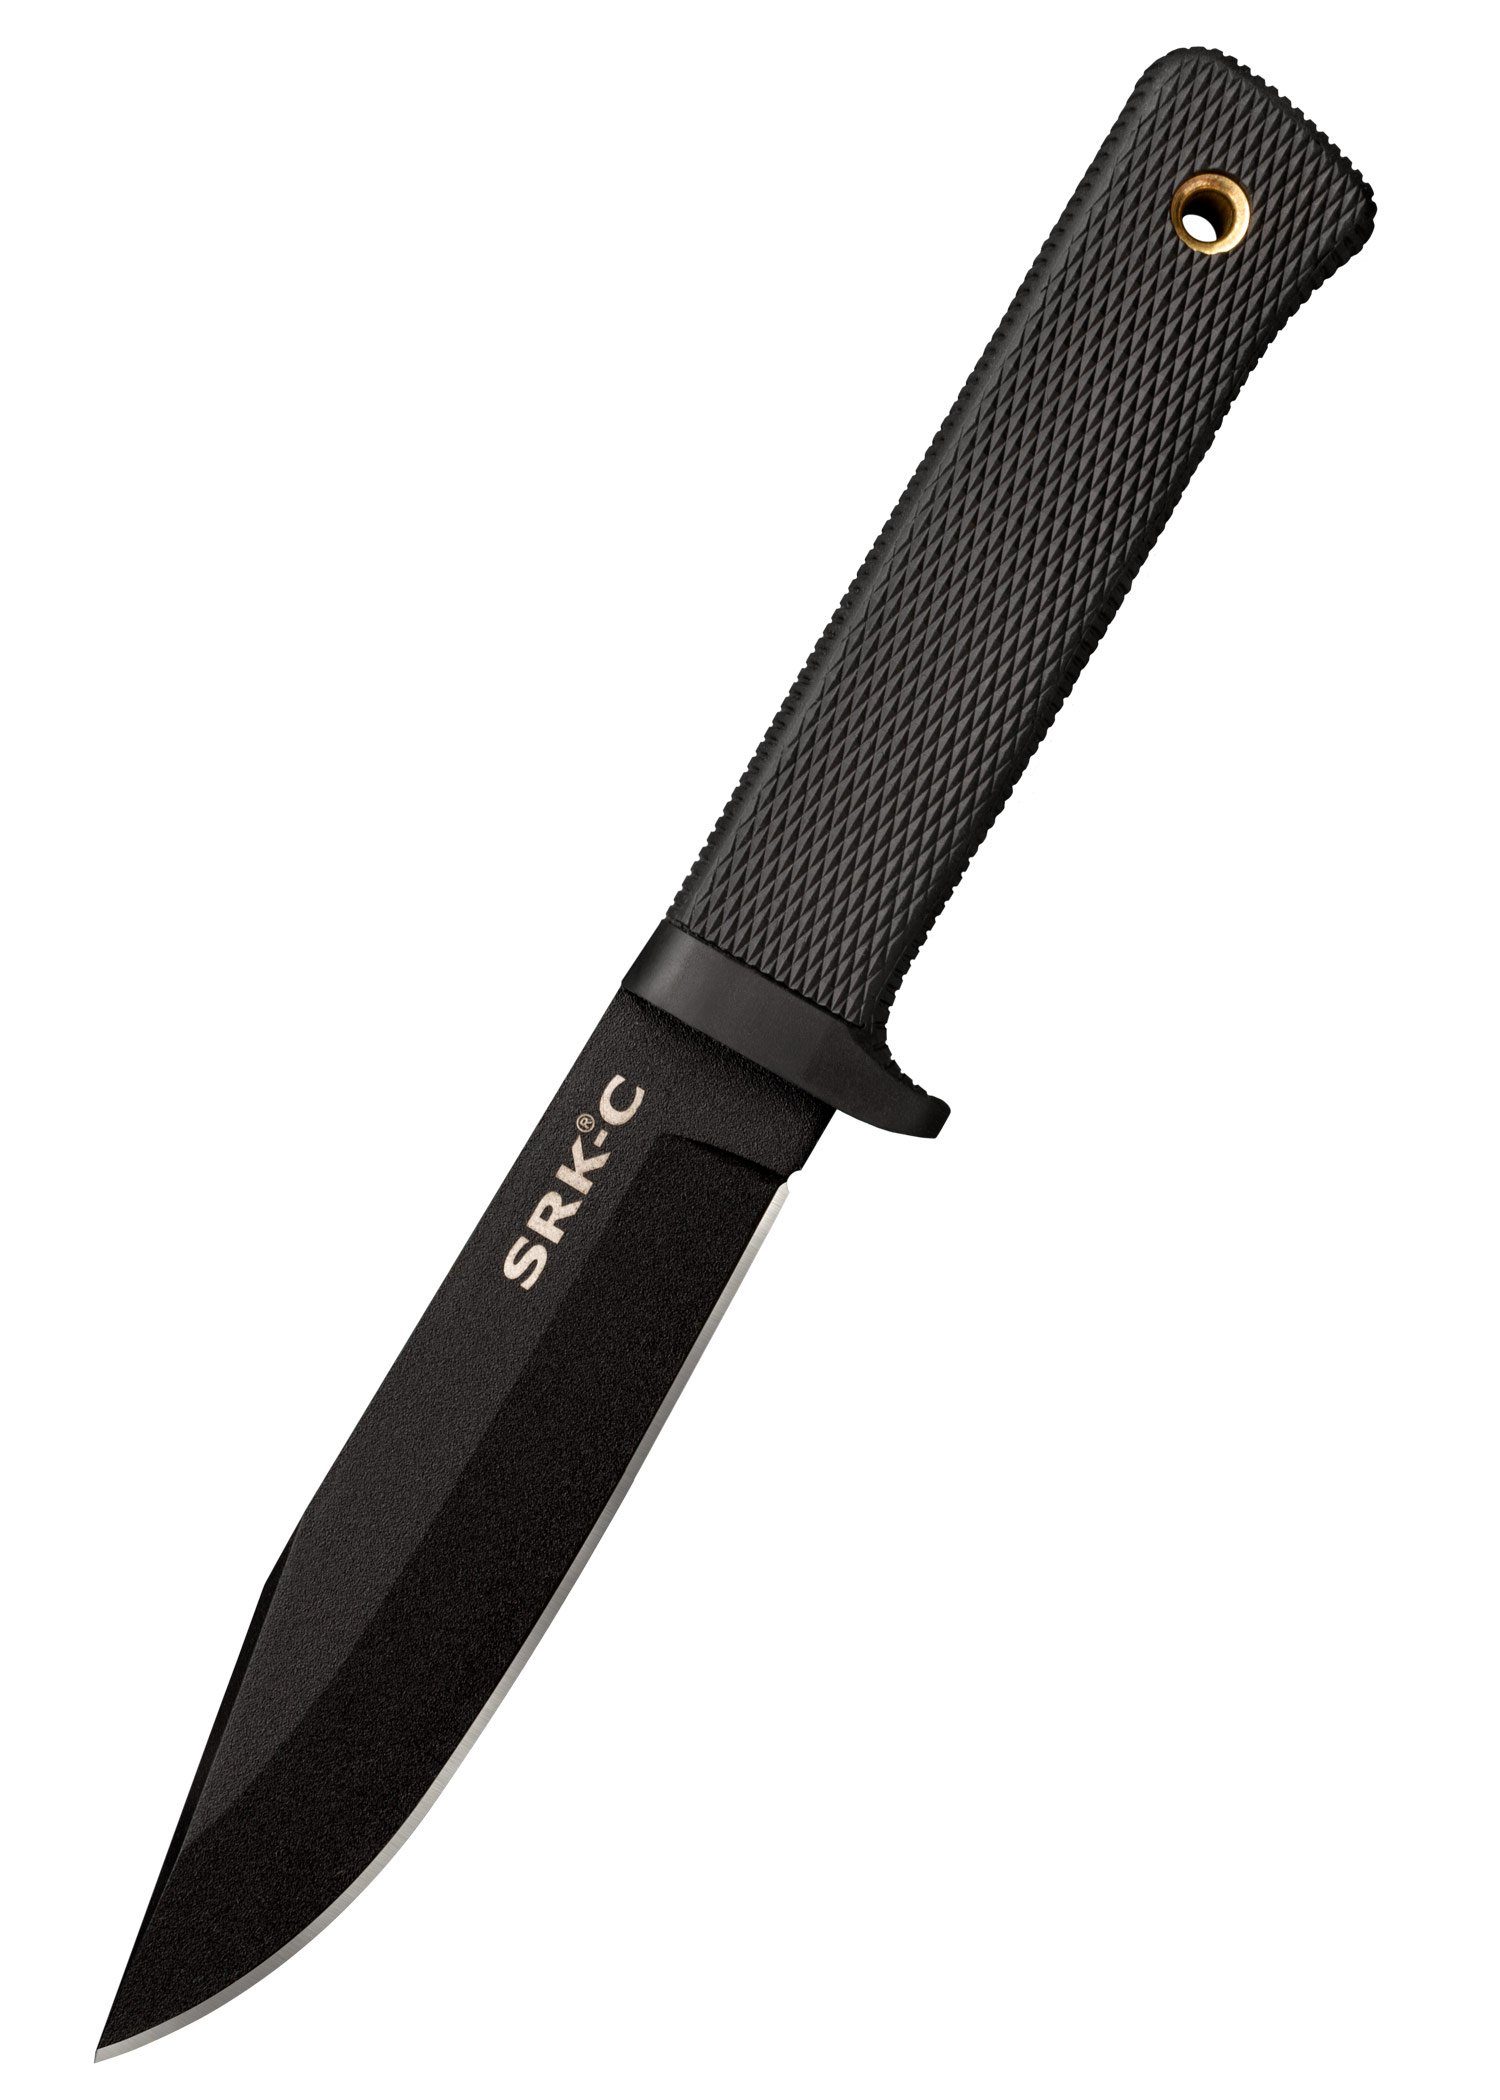 mit feststehendes Messer SRK Scheide Cold Survival Cold Knife Compact Rettungsmesser Steel Steel